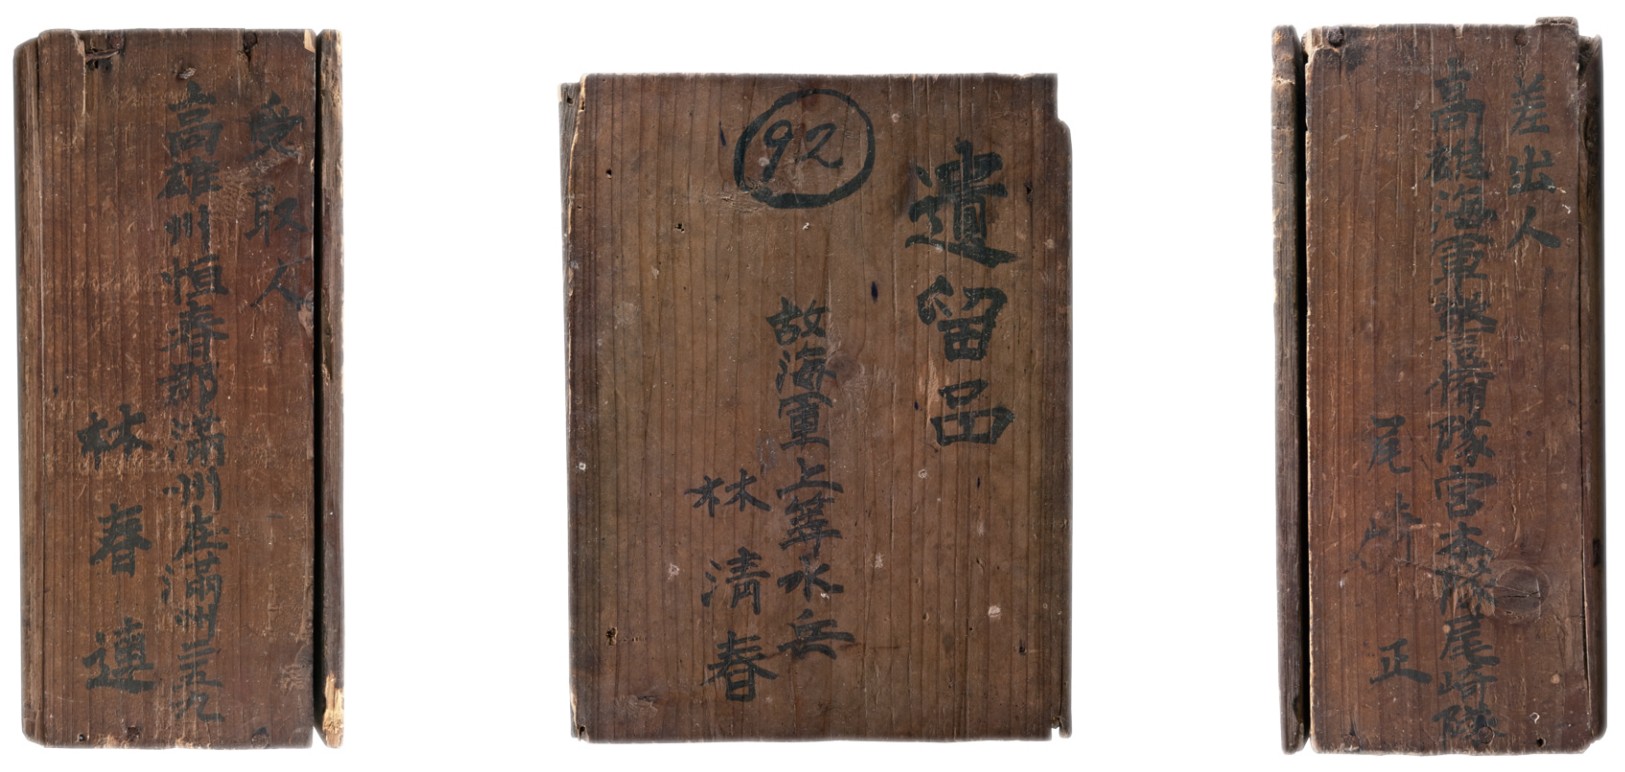 木盒內曾經裝有林清春的遺物：毛髮、指甲及生前使用過的衣物。木盒左側寫著父親「林春連」之名，右側則標示林清春所屬部隊，而數字「92」 則是他的遺體編號。（館藏號2013.027.0001） 